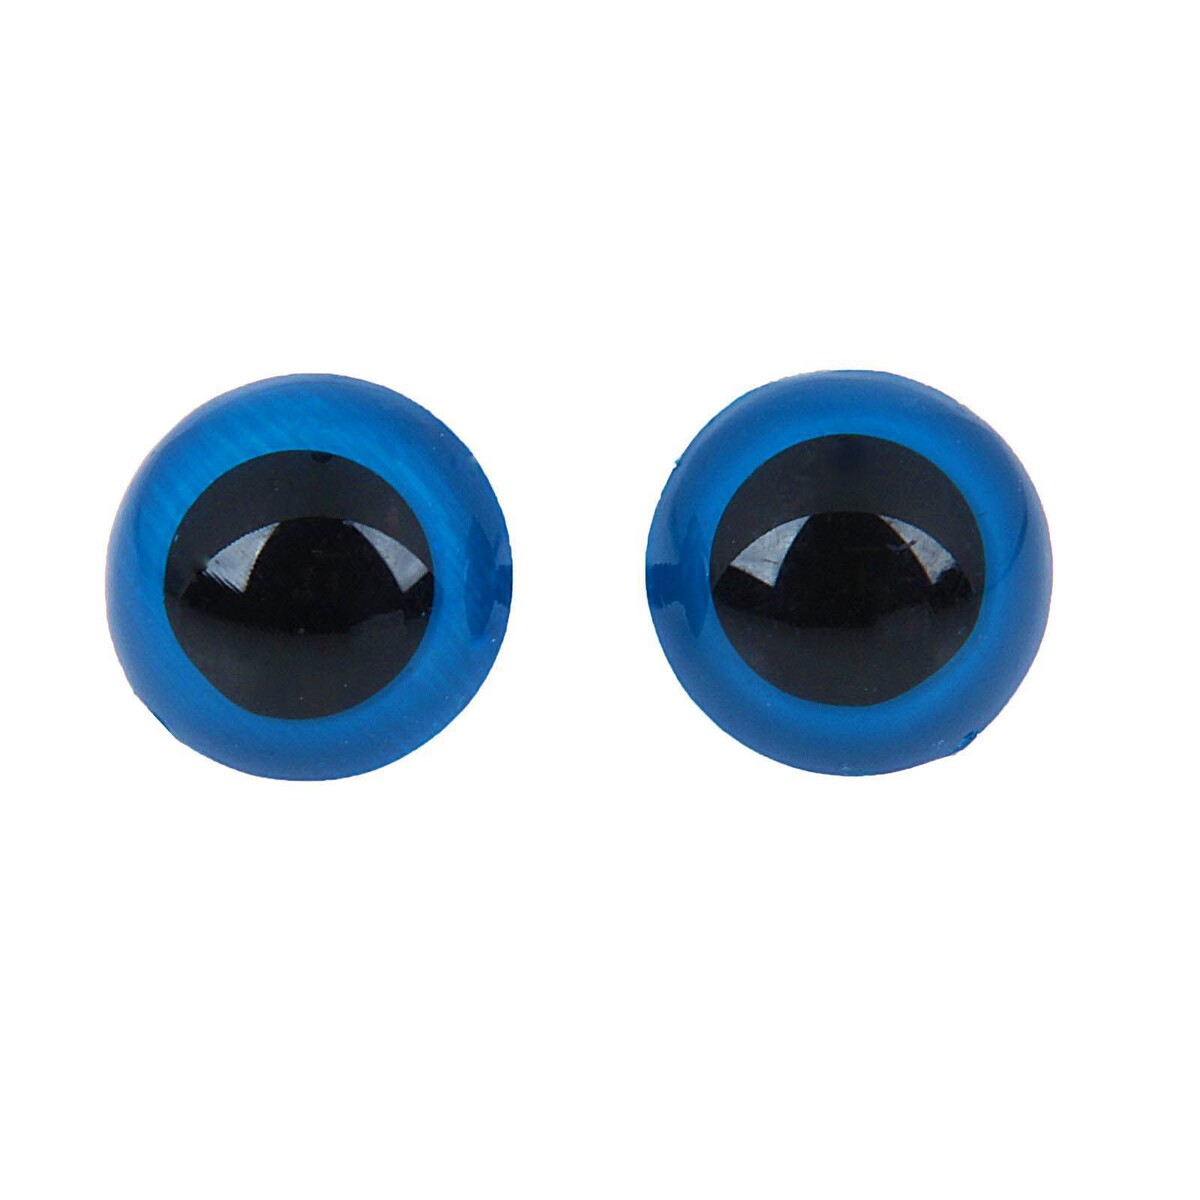 Глазки для кукол, винтовые с заглушками, полупрозрачные, набор 4 шт, цвет голубой, размер 1 шт: 2×2 см глаза винтовые с заглушками полупрозрачные набор 4 шт голубой размер 1 шт 1×1 см